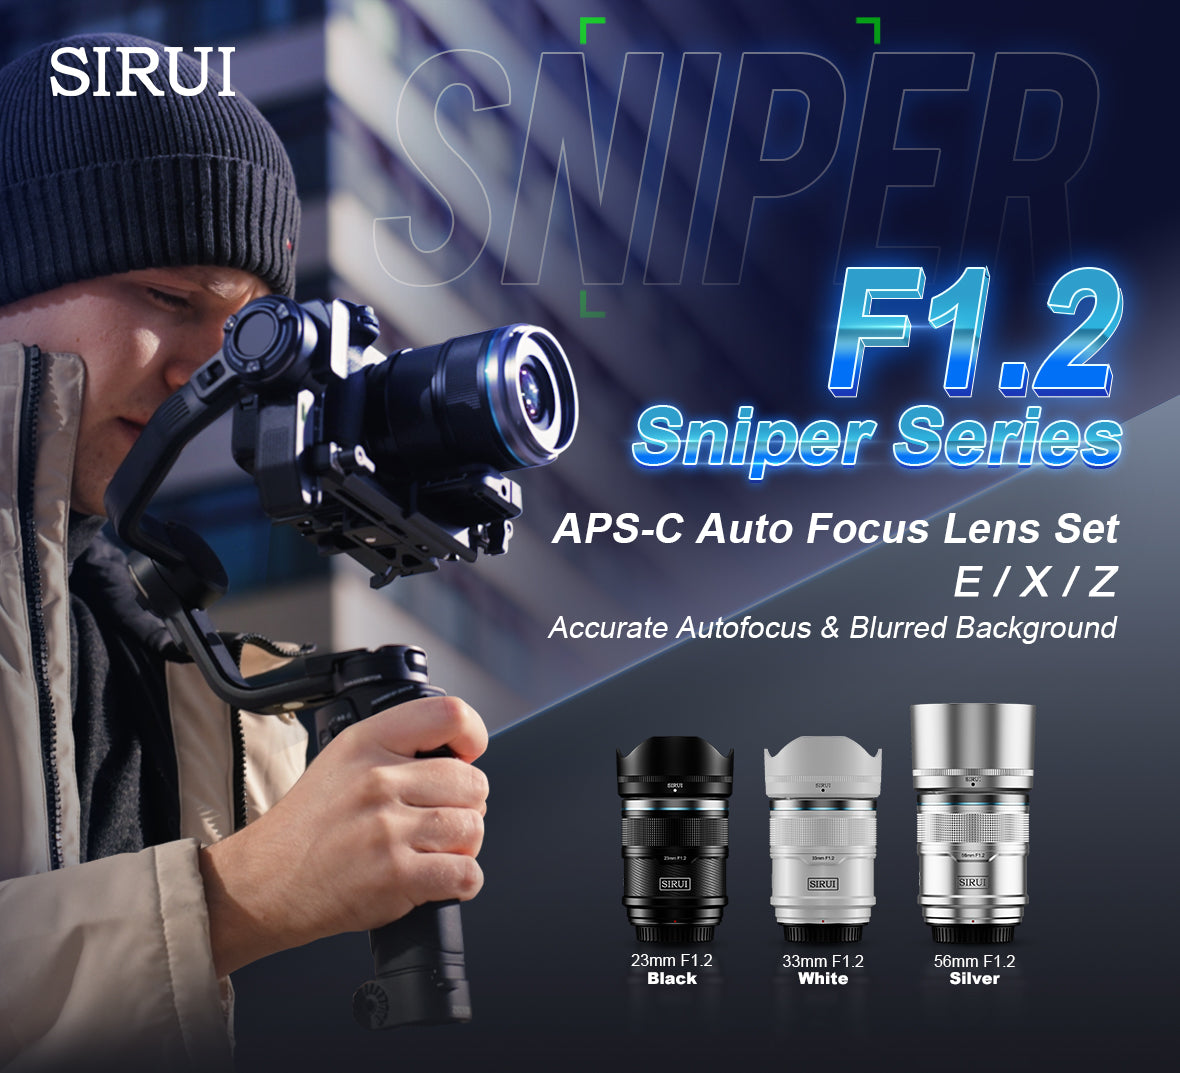 SIRUI Sniper Series F1.2 APS-C Autofocus Lens